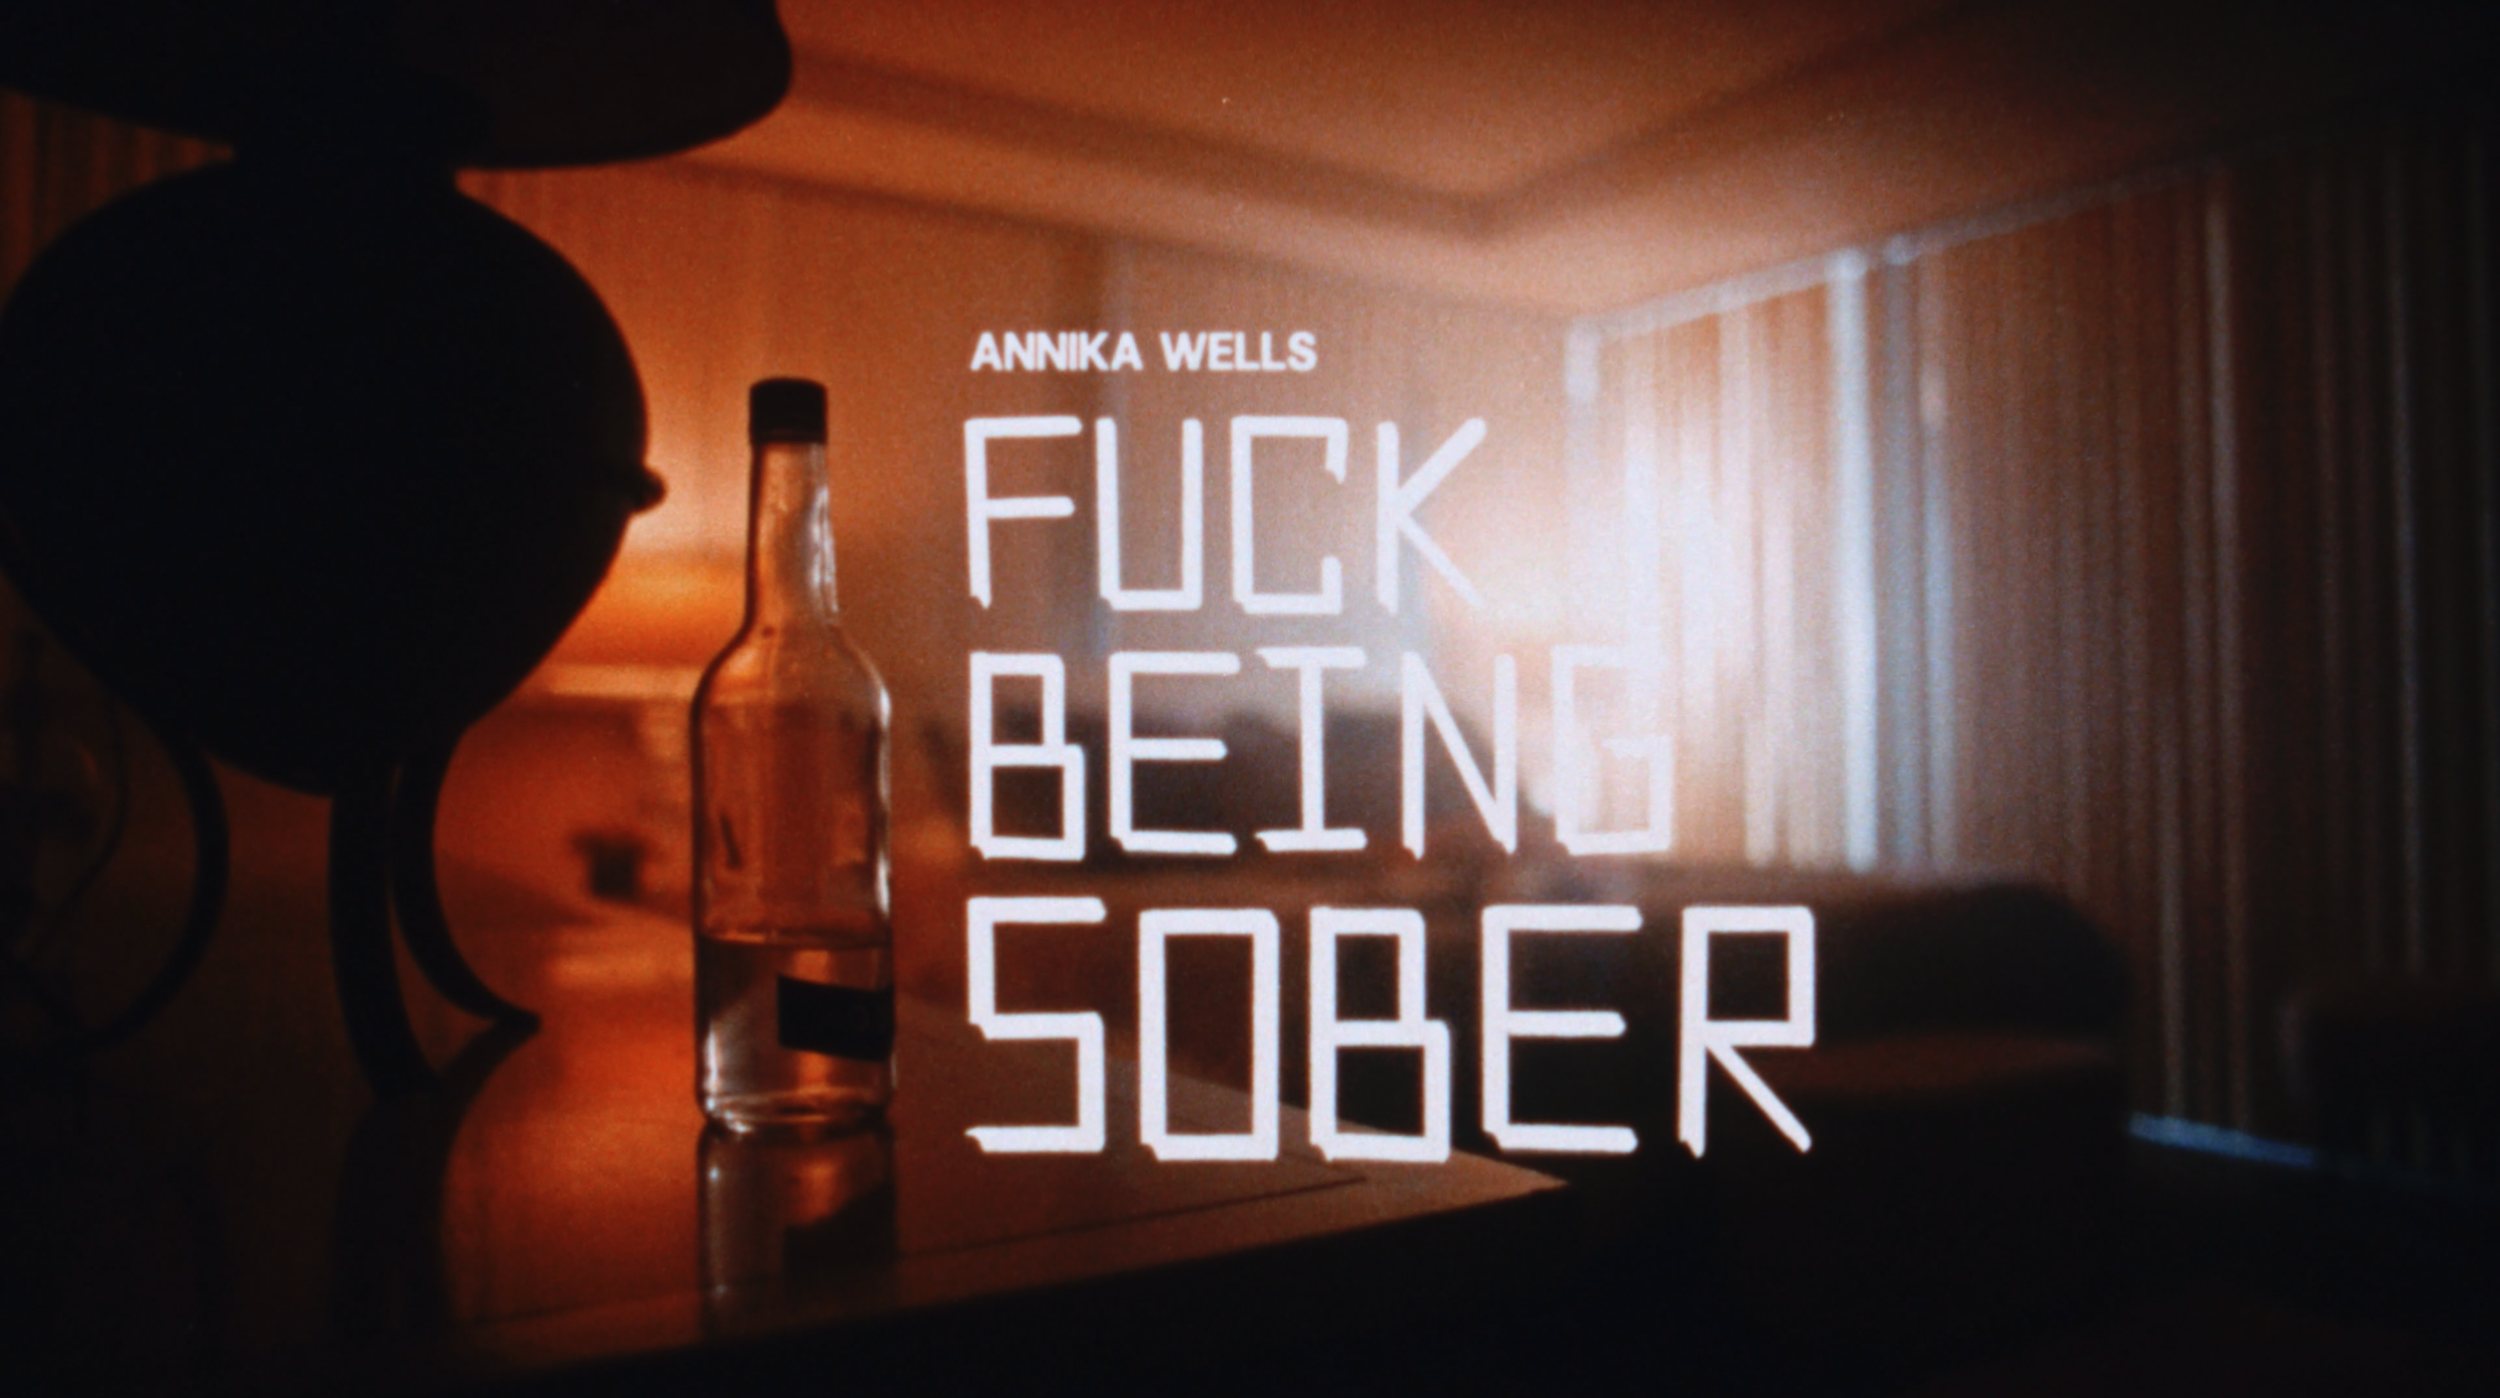 annika wells - fuck being sober